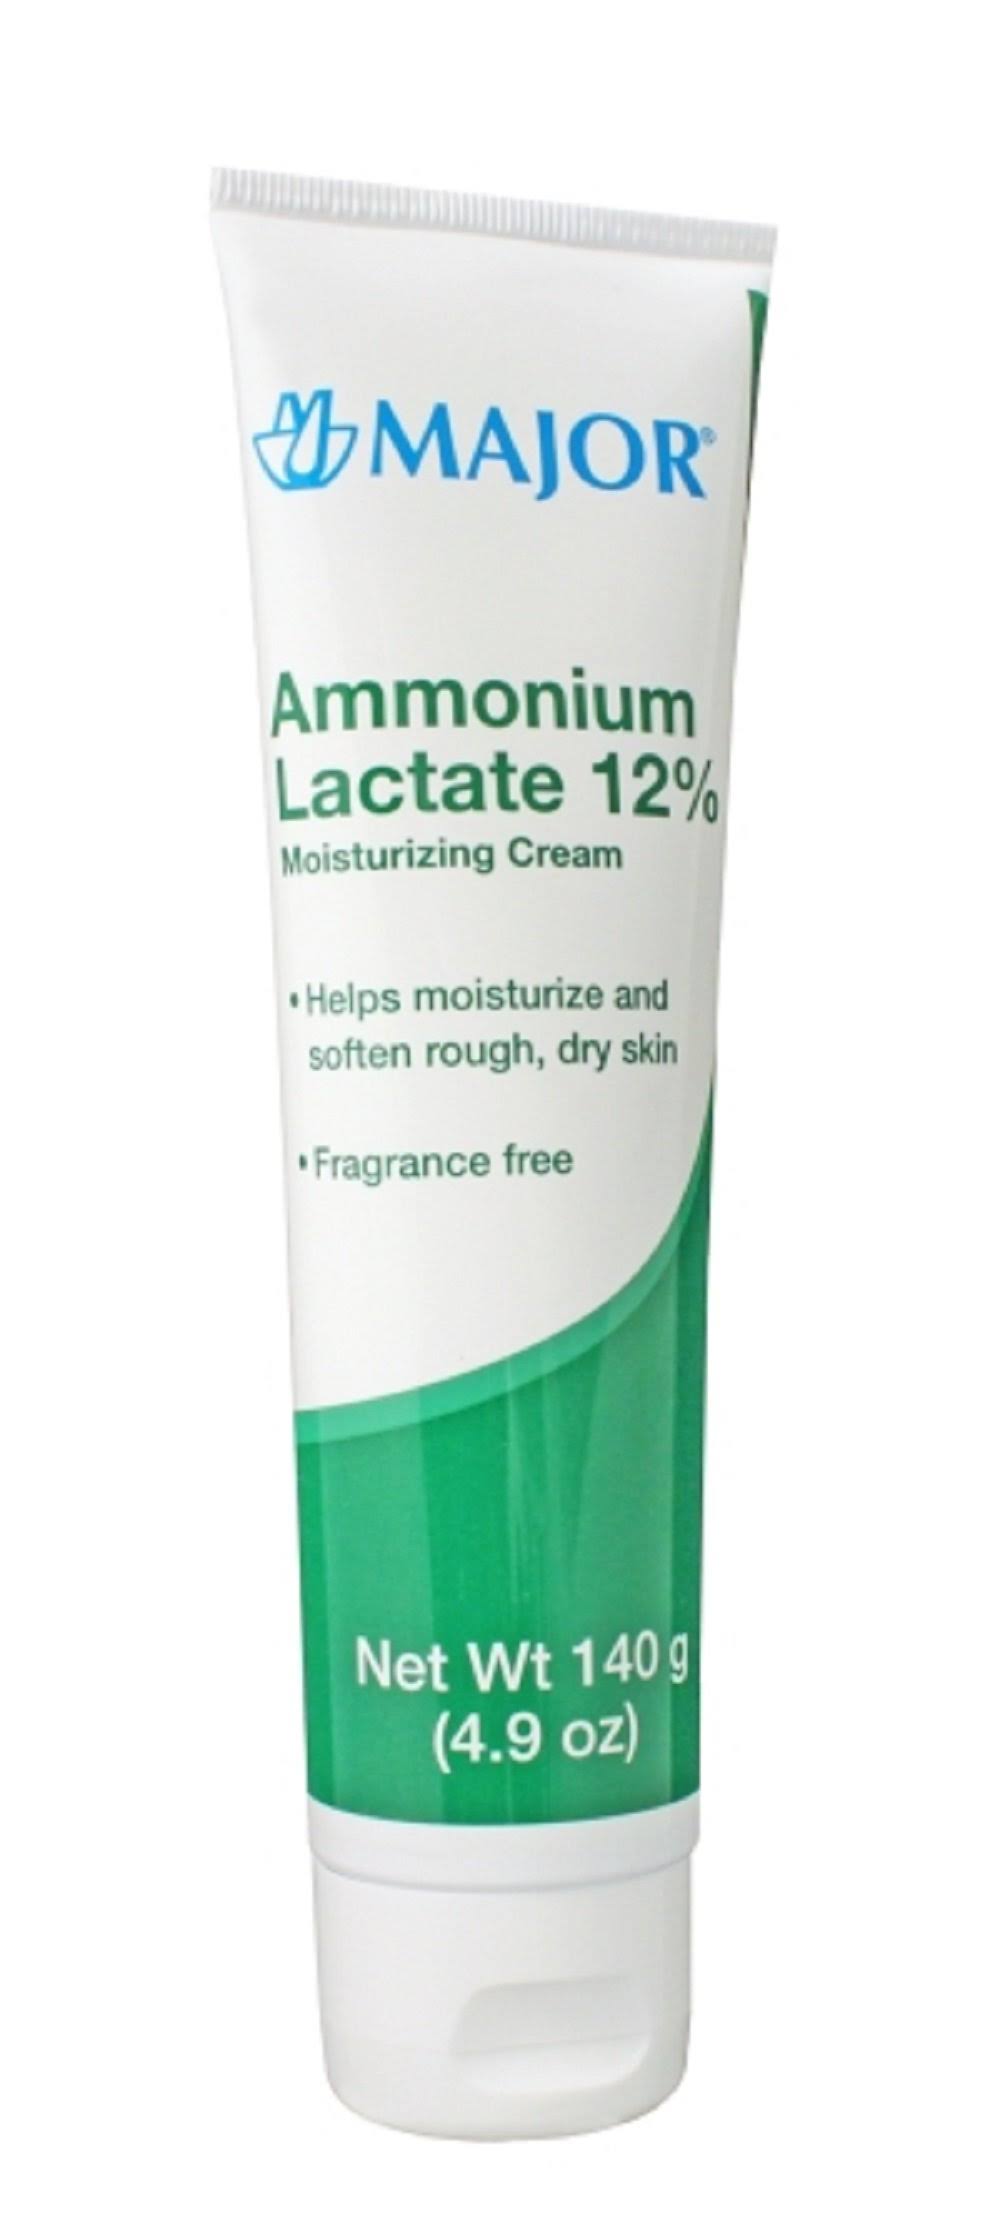 Major Ammonium Lactate 12 Percent Moisturizing Cream - 140g